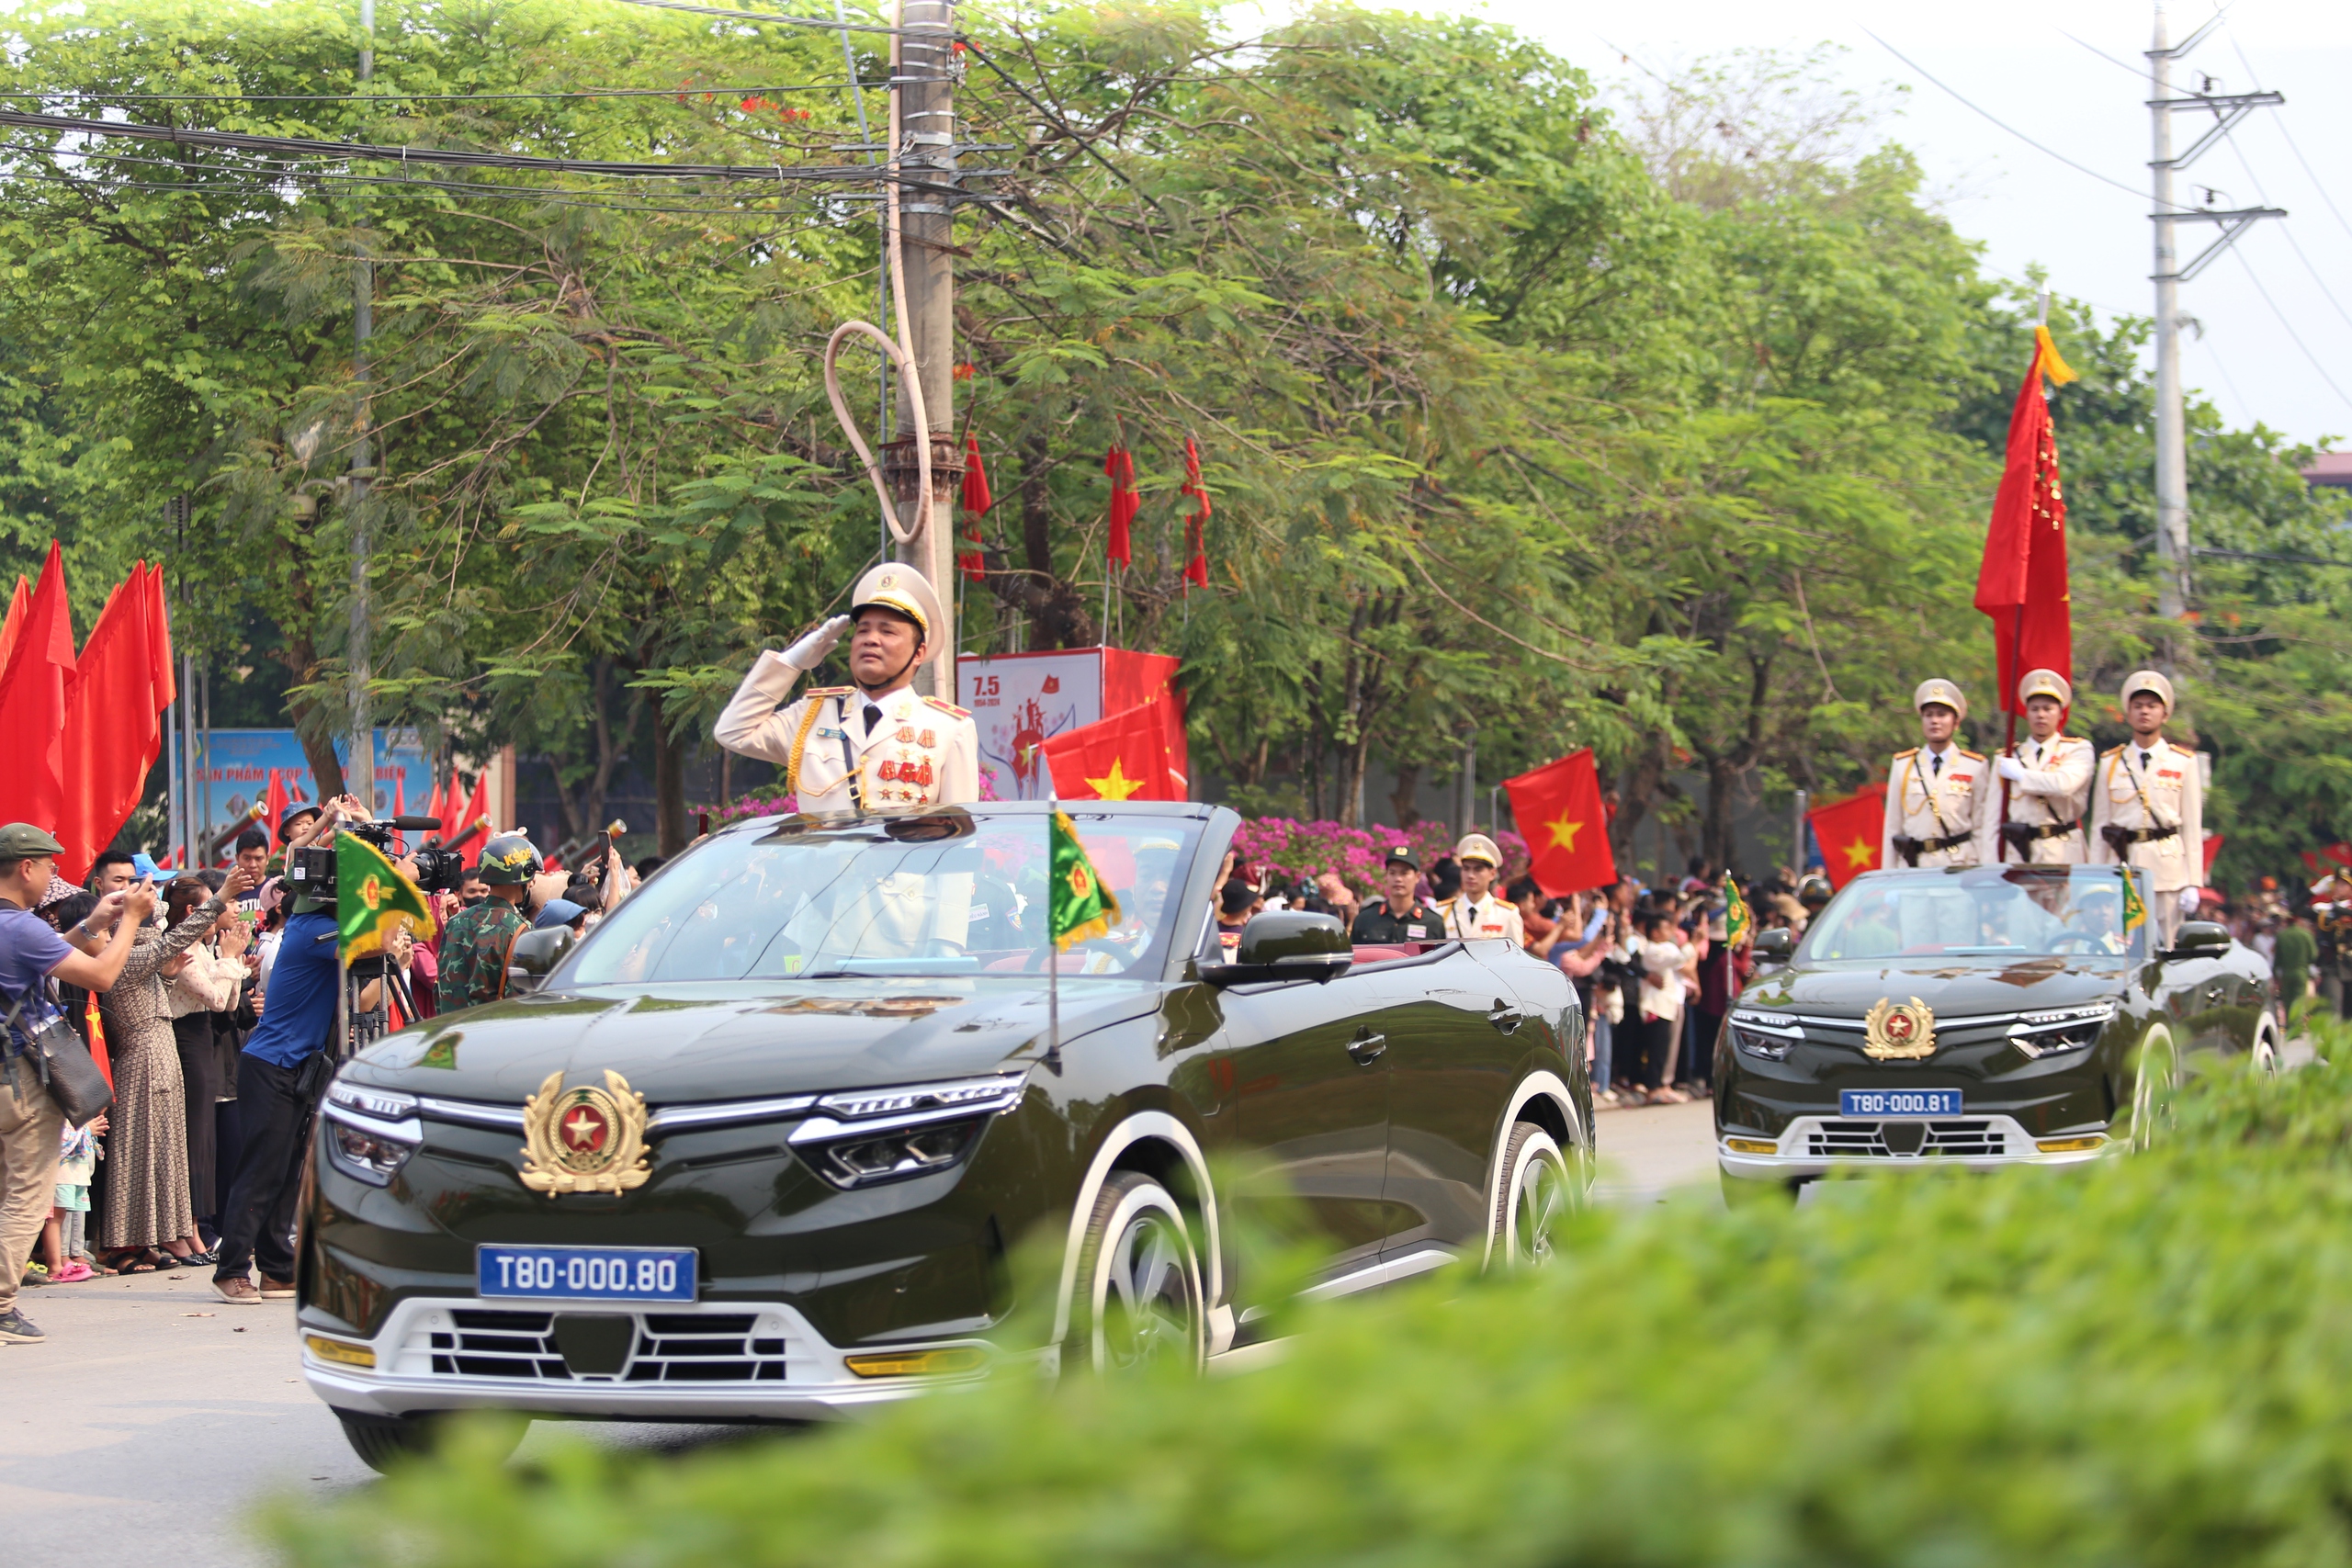 12 nghìn người tham gia, lễ diễu binh, diễu hành tại Điện Biên Phủ có gì đặc biệt?- Ảnh 3.